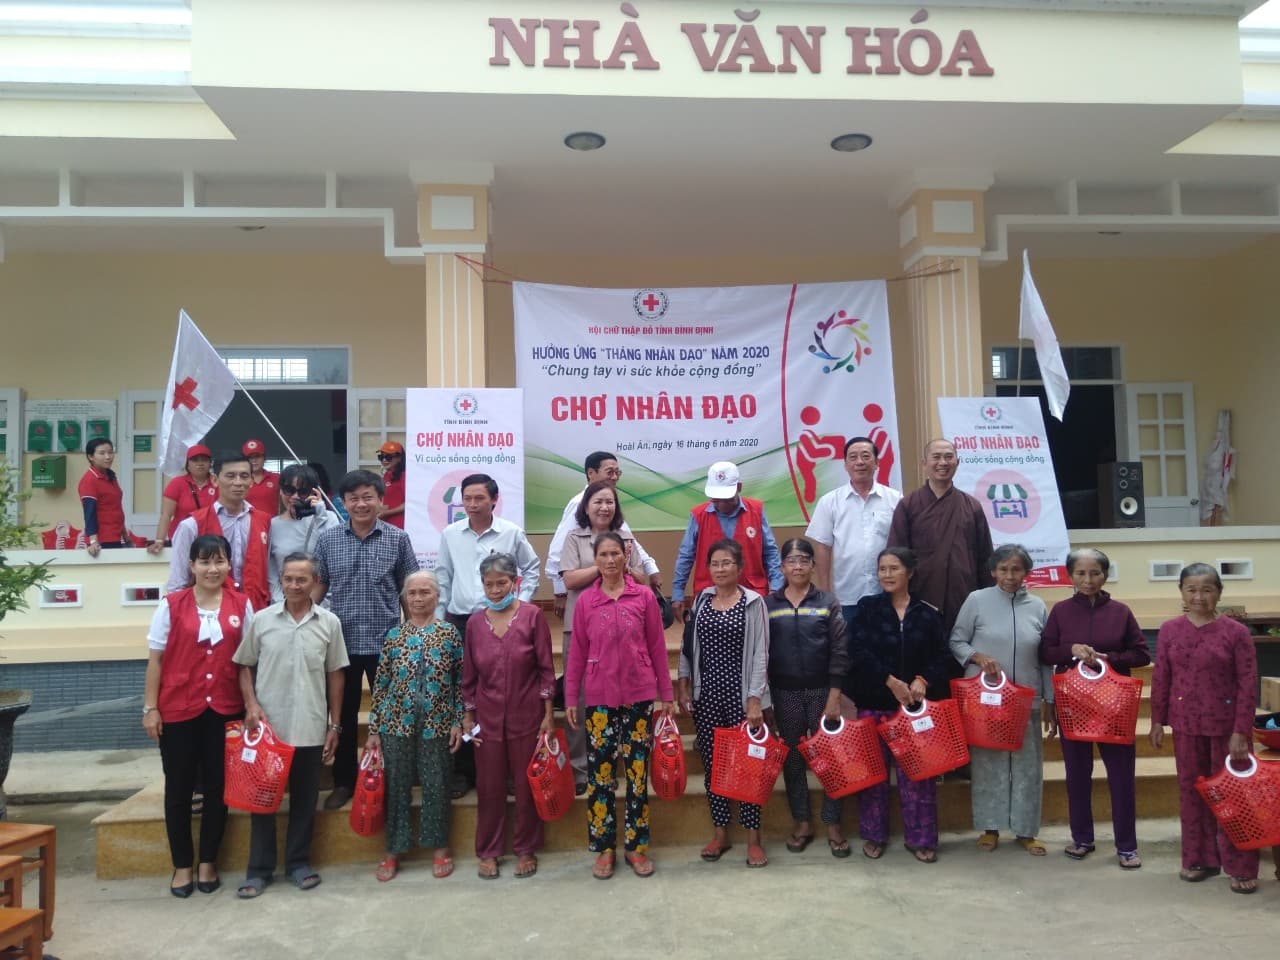 Phiên chợ nhân đạo tại huyện Hoài Ân và huyện Tây Sơn, tỉnh Bình Định.